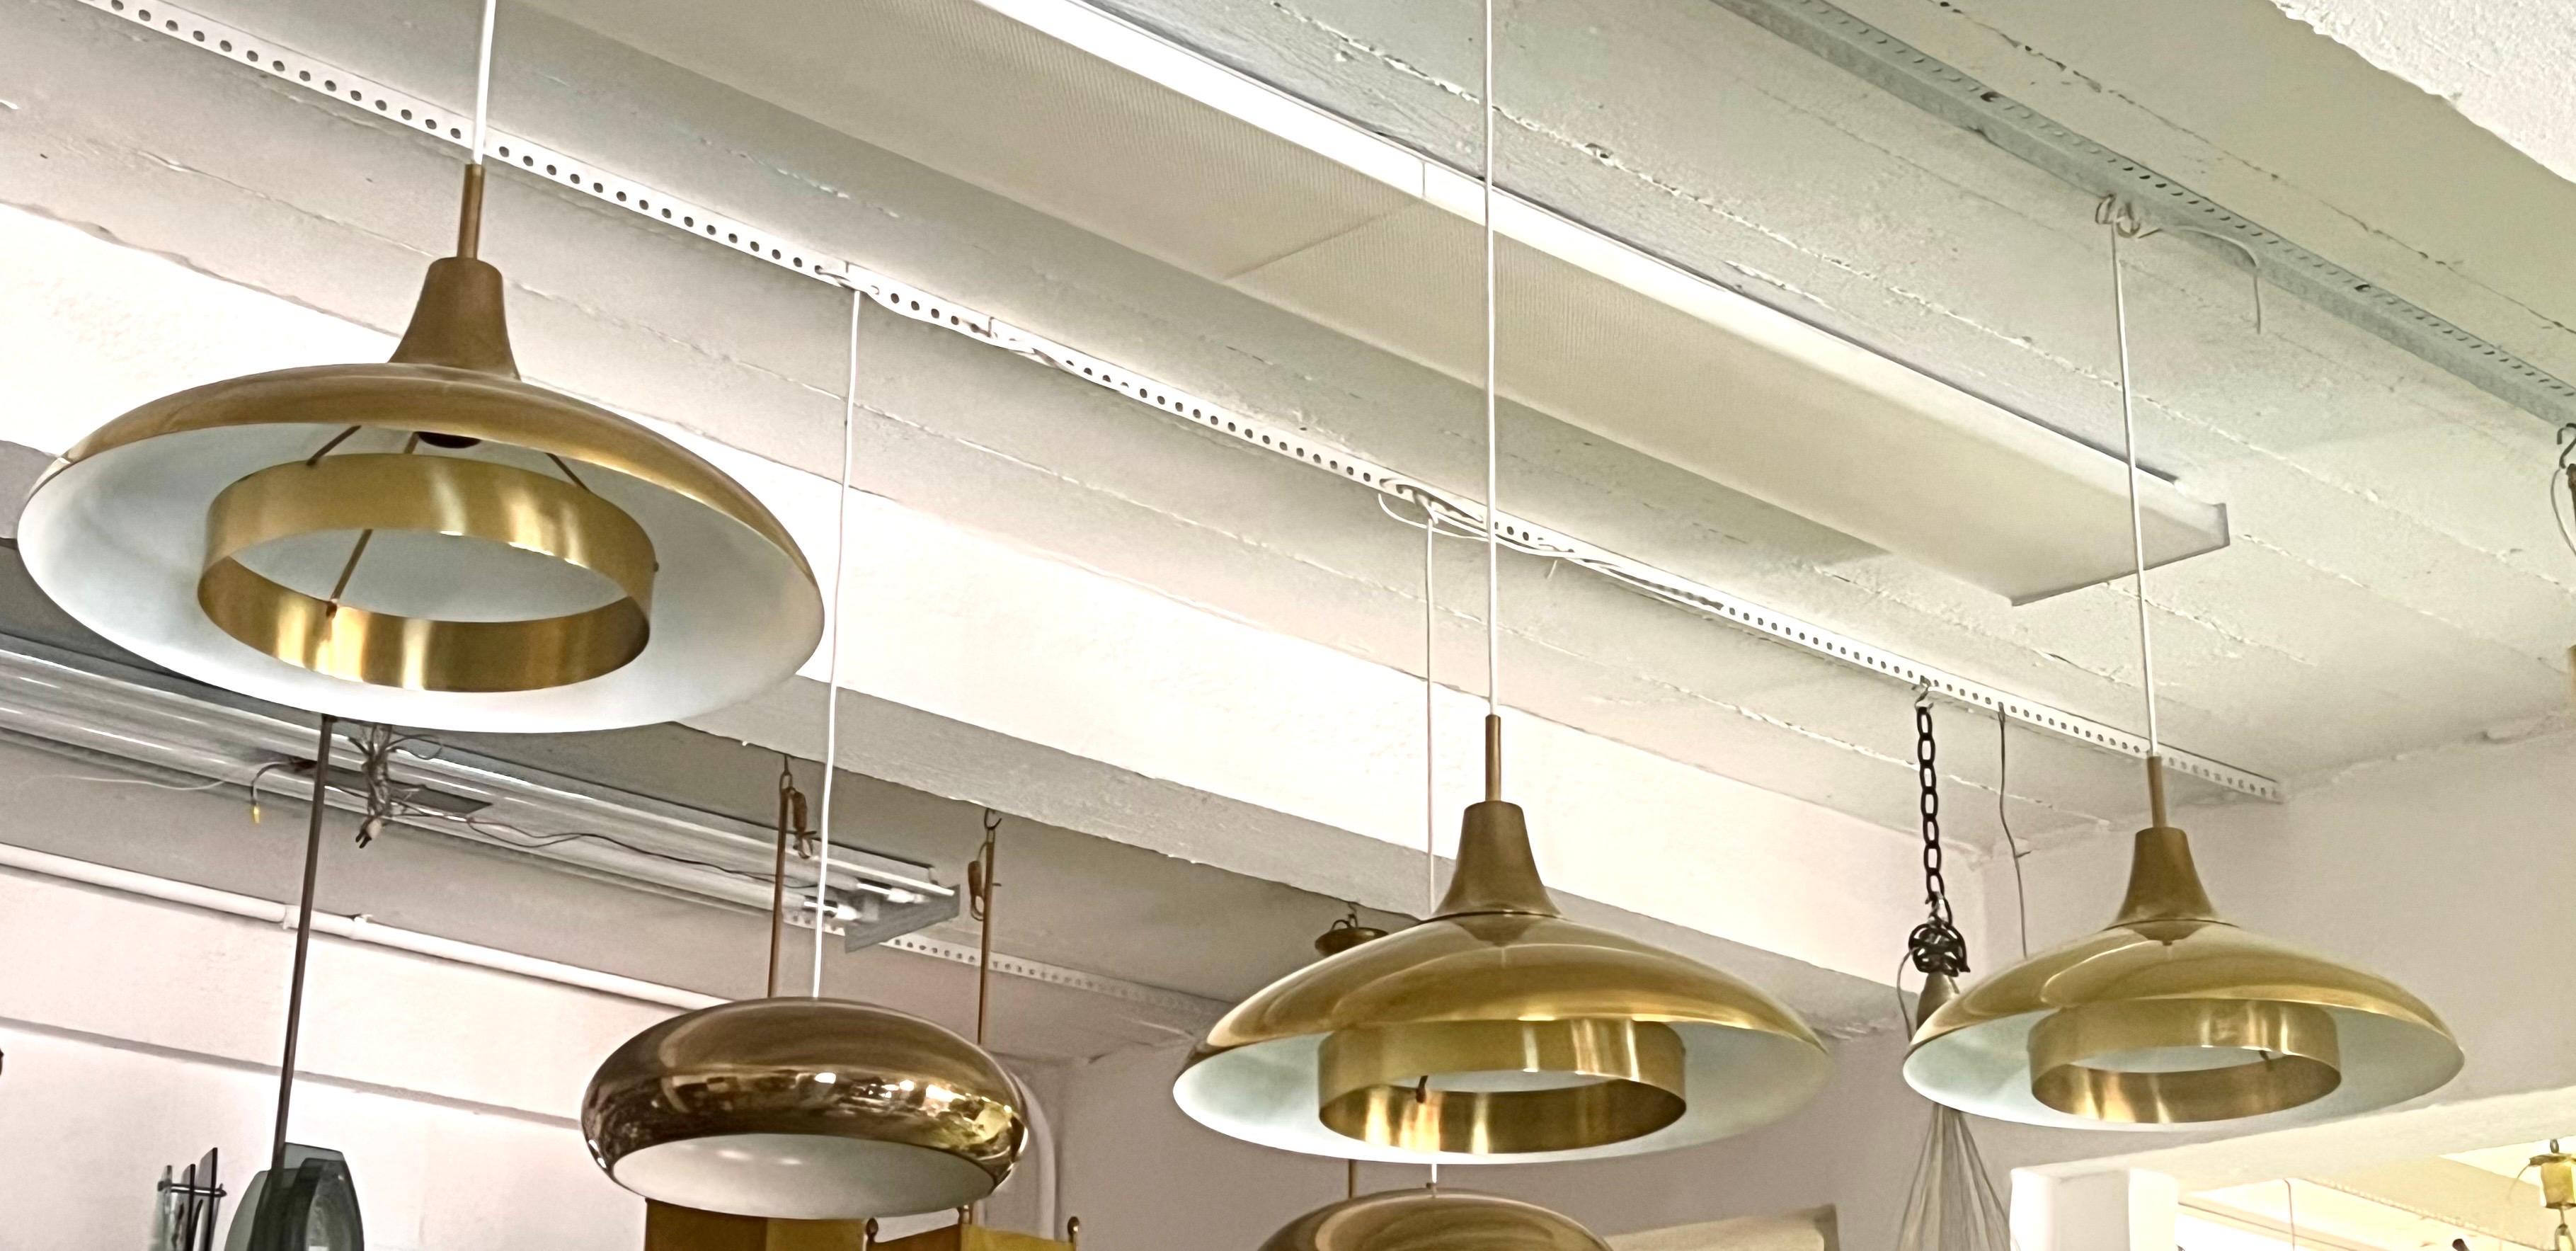 Elegant, intemporel et rare ensemble de 3 pendentifs en laiton massif de Borens, Suède, datant de 1960. Les luminaires illustrent une perspective minimaliste que l'on retrouve dans les arts décoratifs danois, suédois et finlandais, où la fonction et